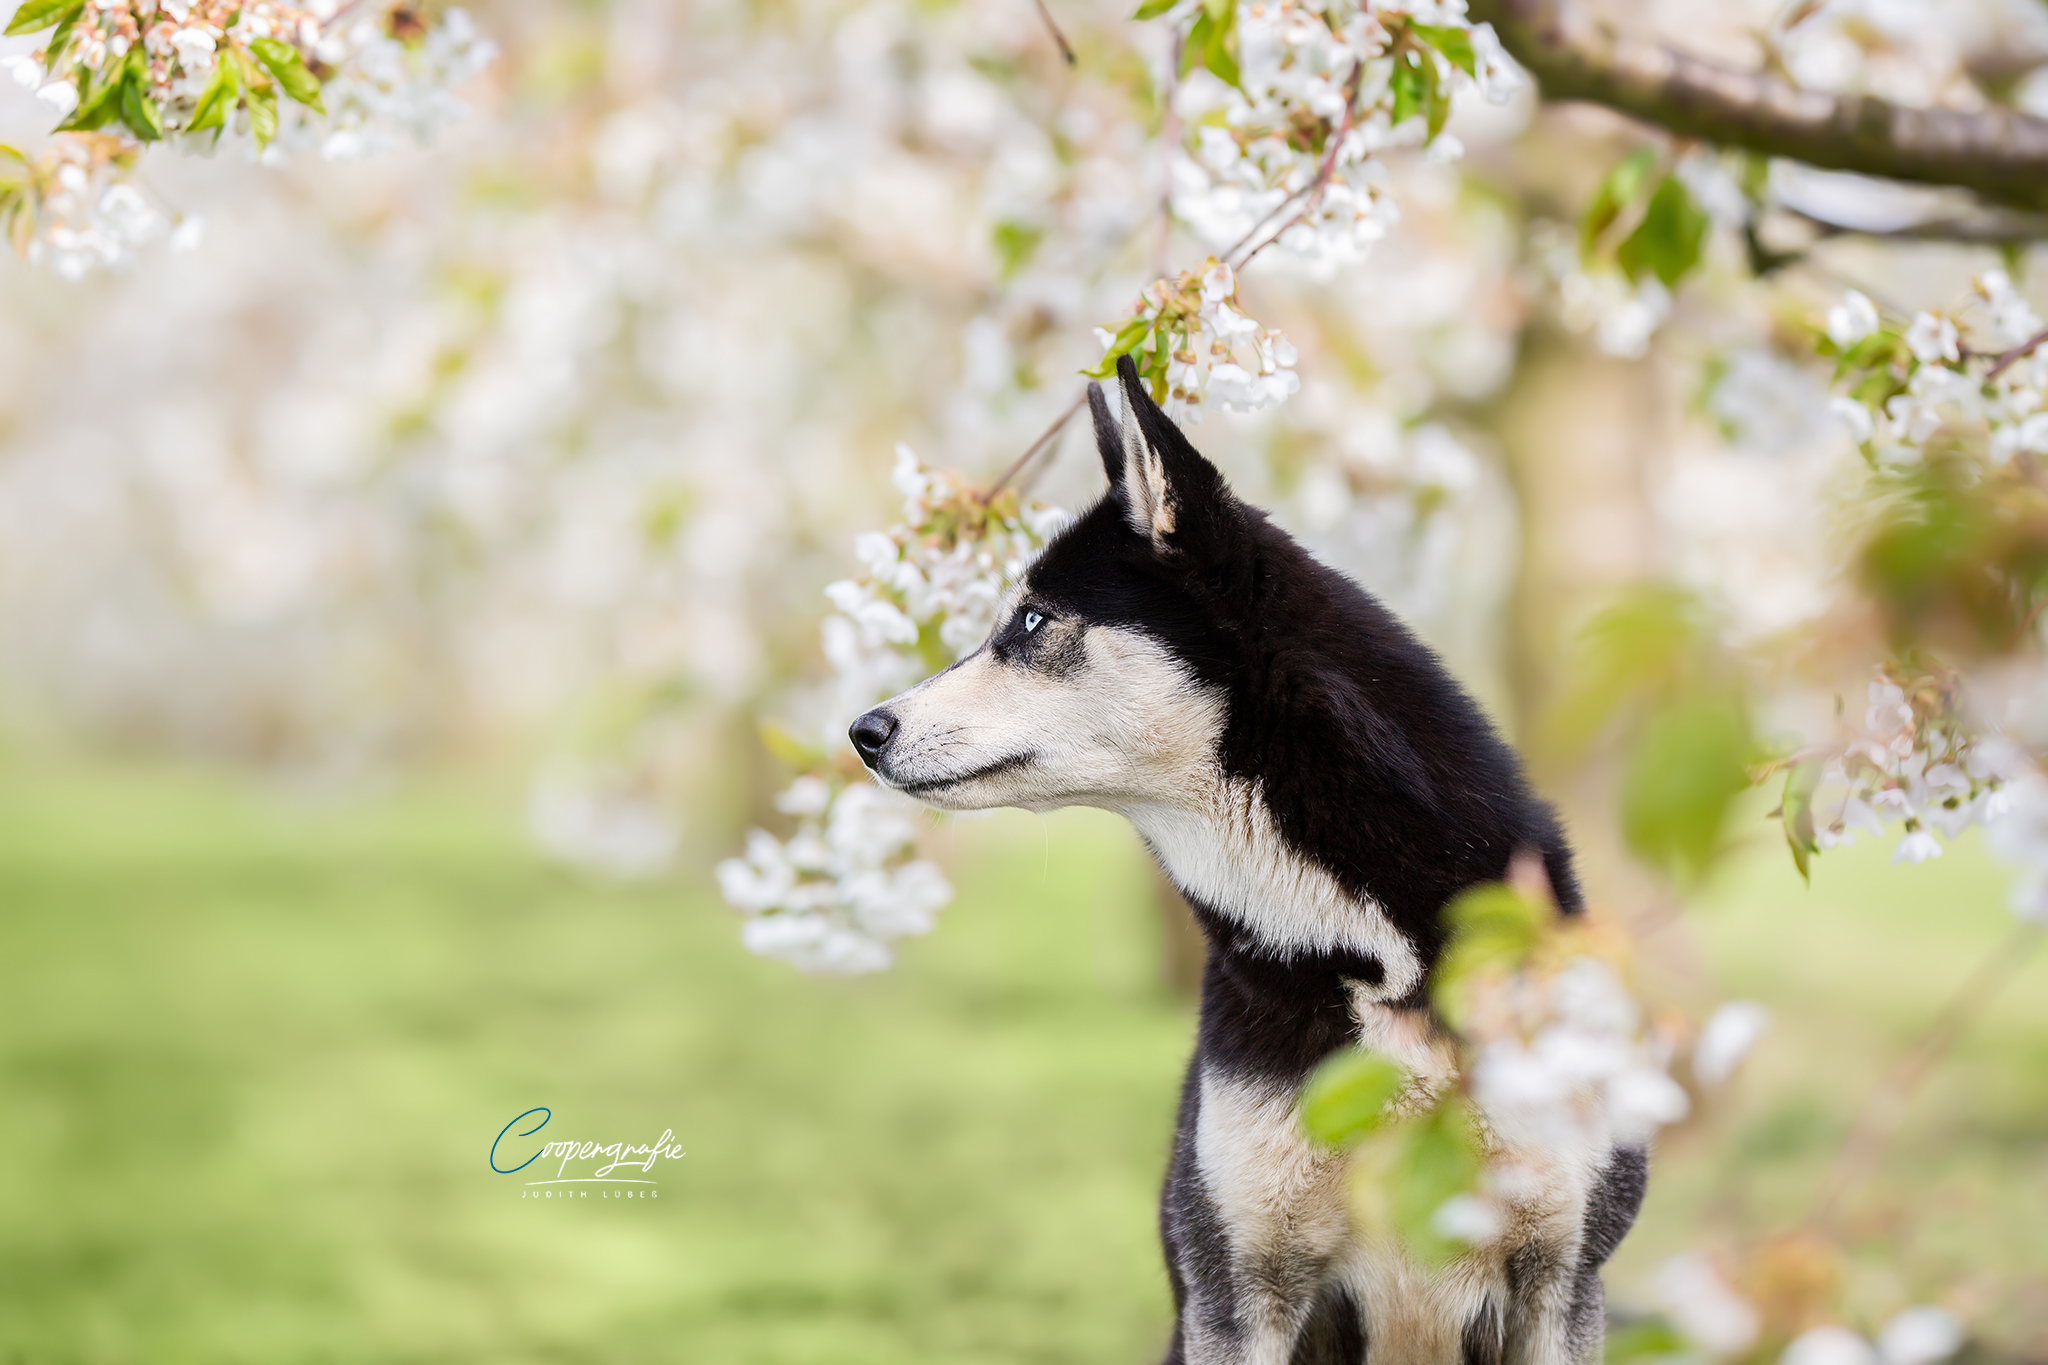 Ein Porträt von einem Husky zwischen Apfelblüten auf einer Obstplantage.